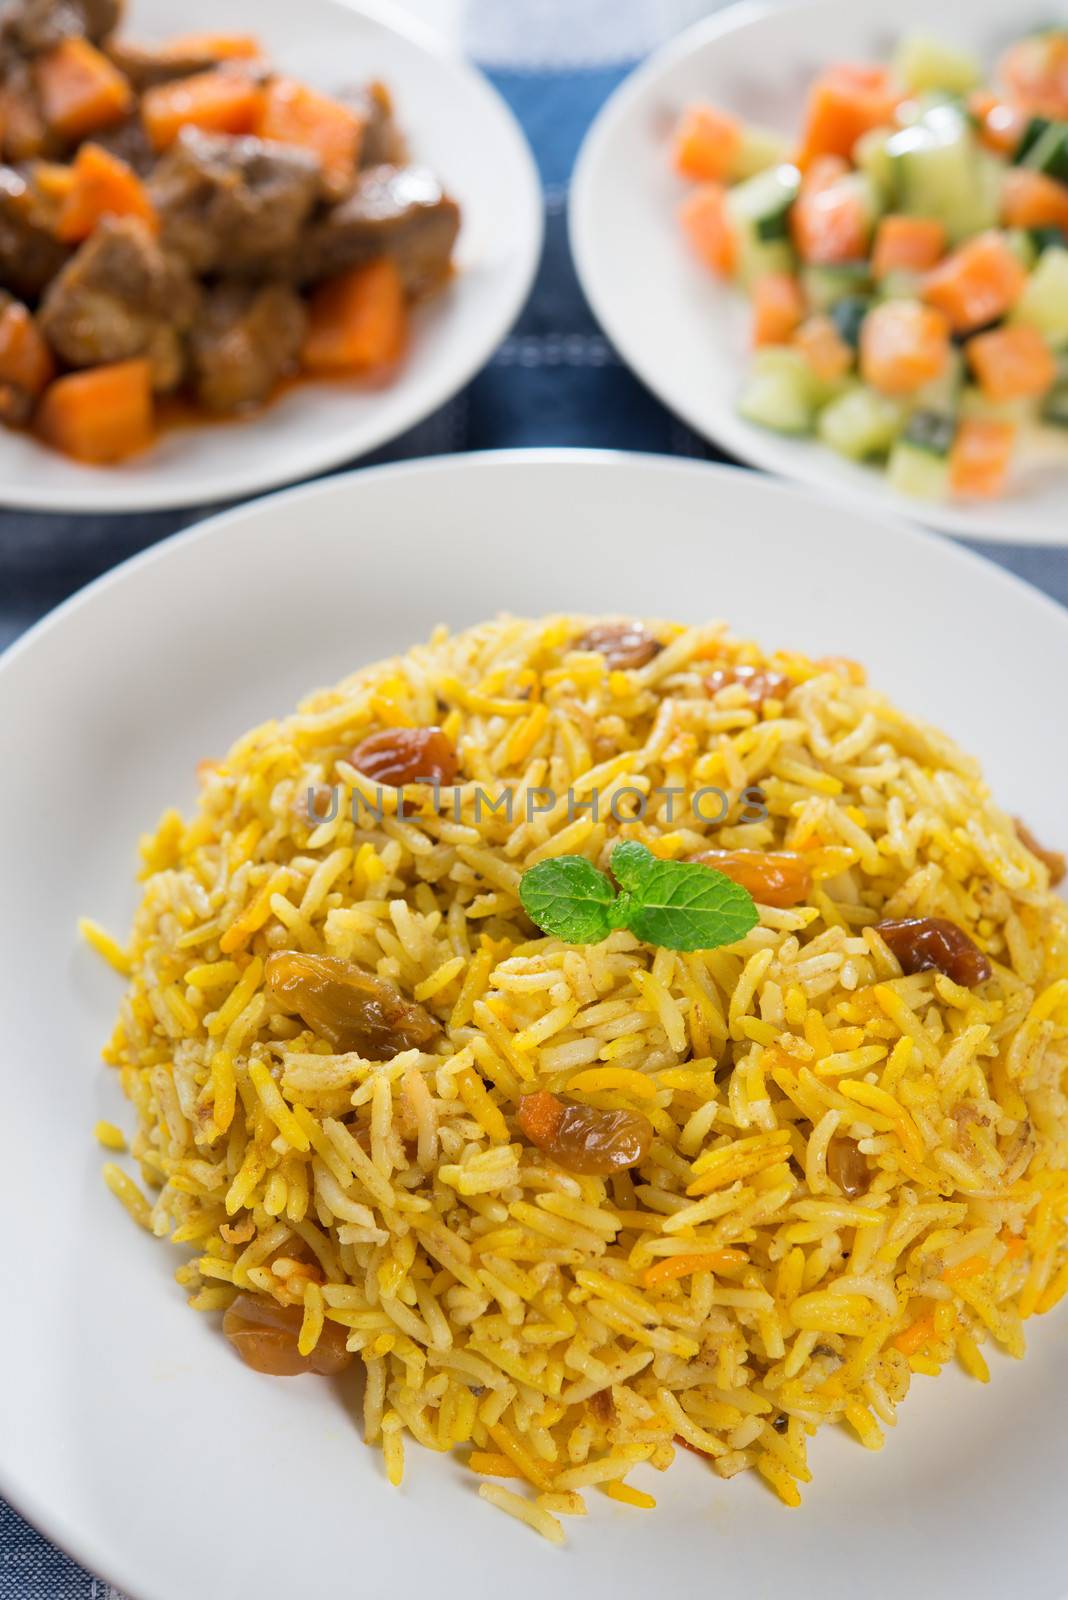 Middle eastern food. by szefei